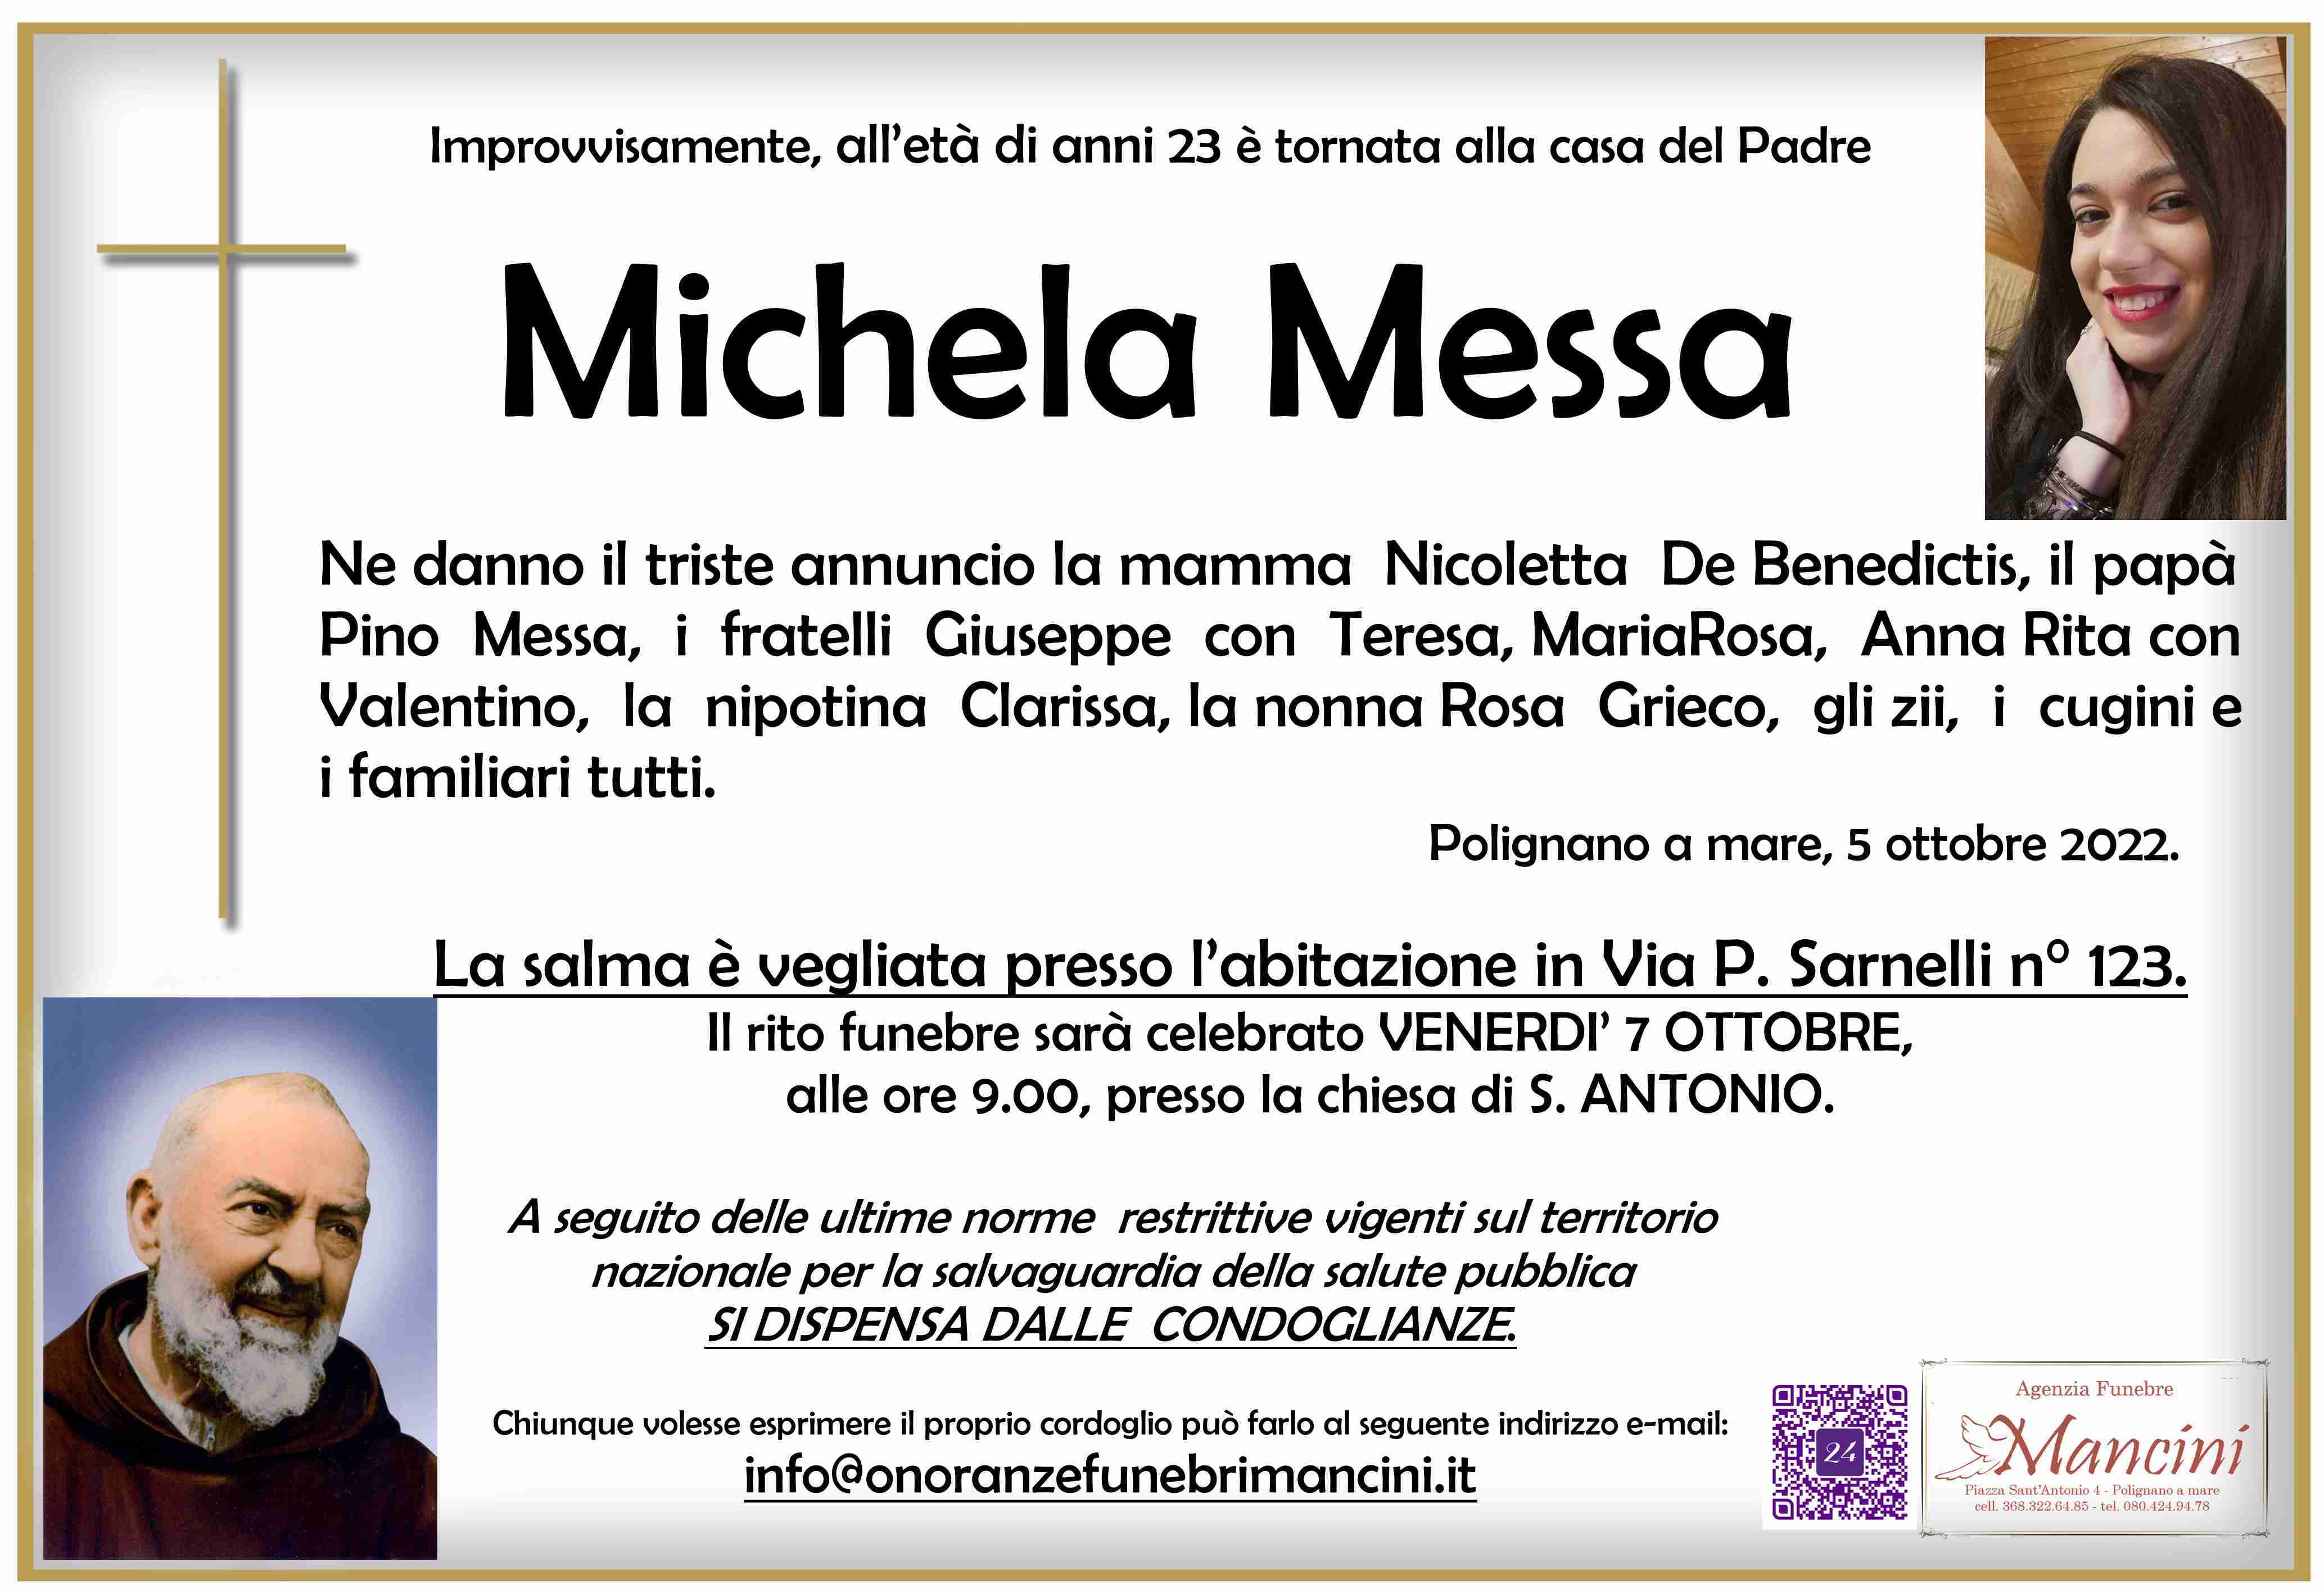 Michela Messa